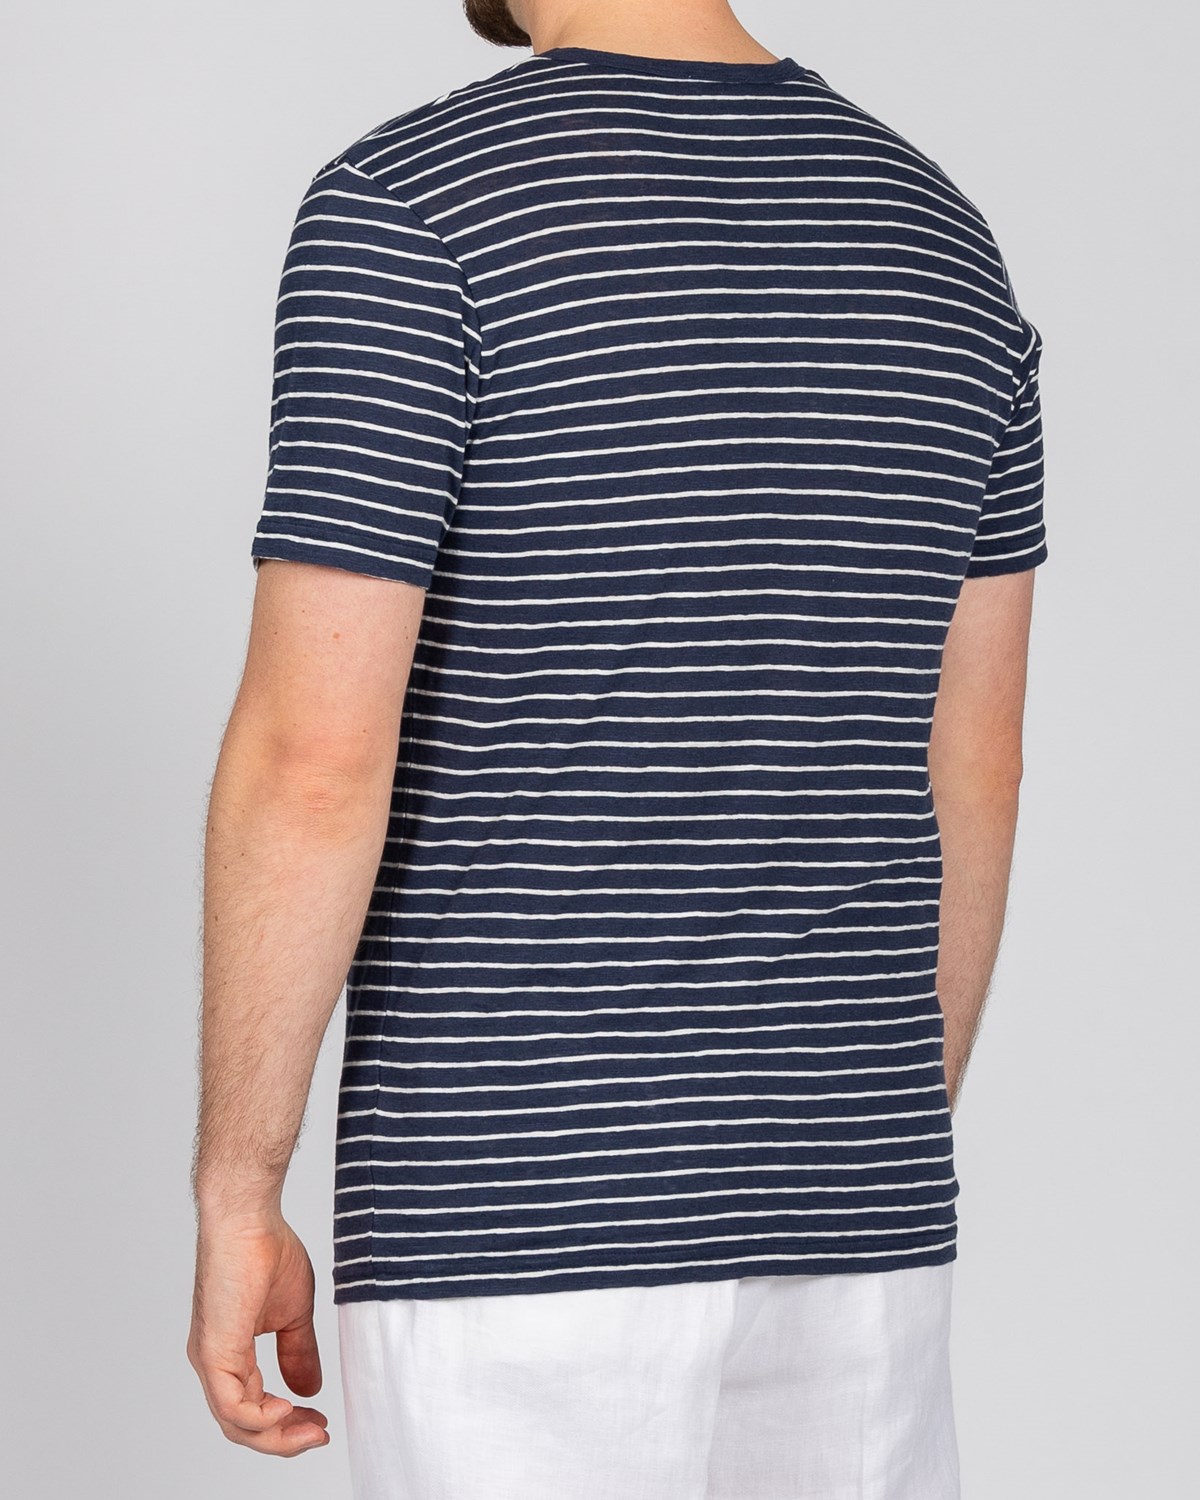 Short Sleeve Cotton/Linen Crew Neck T-Shirt